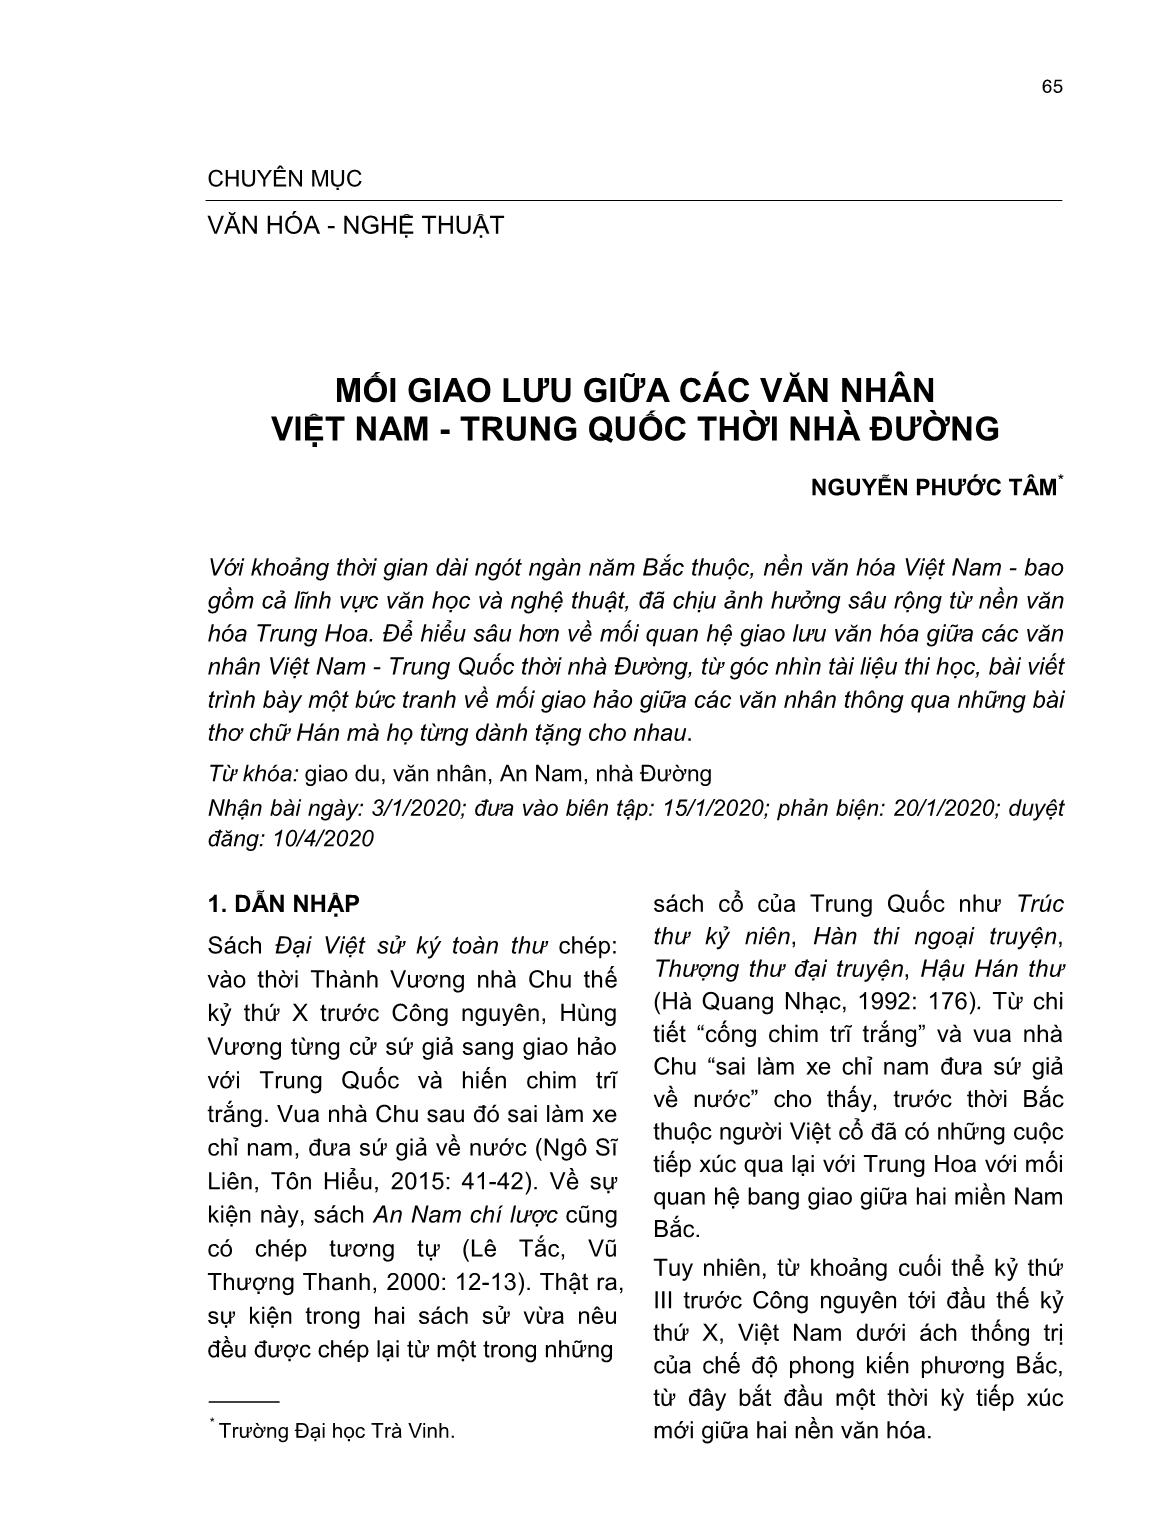 Mối giao lưu giữa các văn nhân Việt Nam - Trung quốc thời nhà đường trang 1